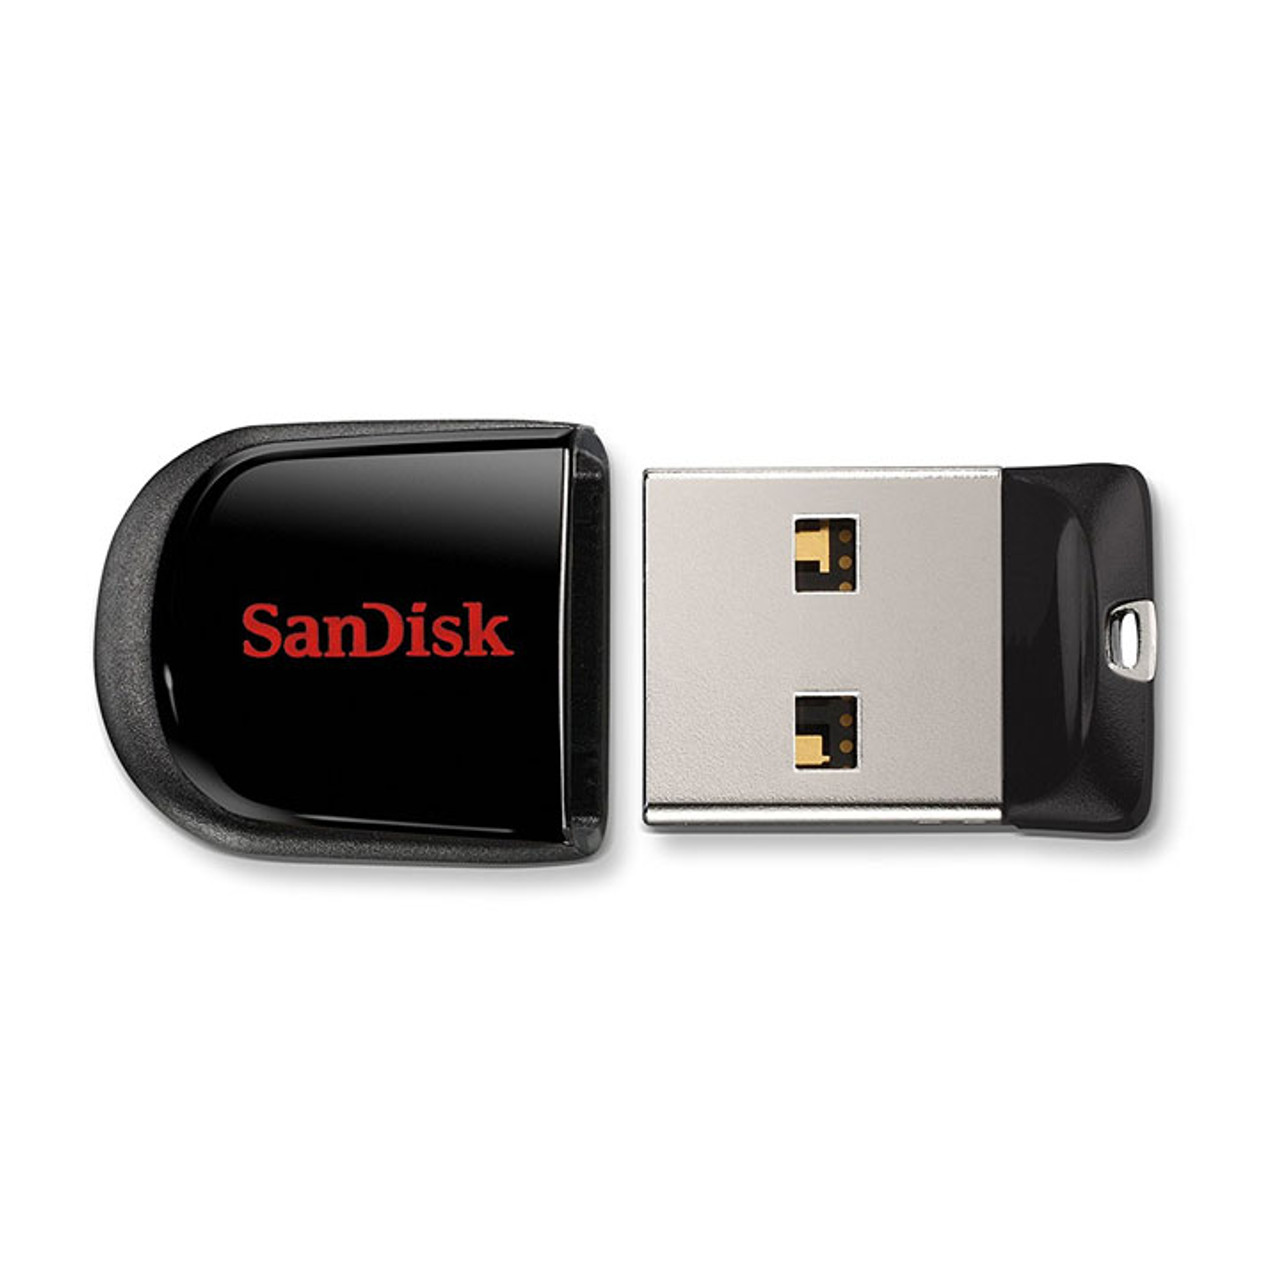 SanDisk Cruzer Fit 16 GB 2.0 Flash Drive